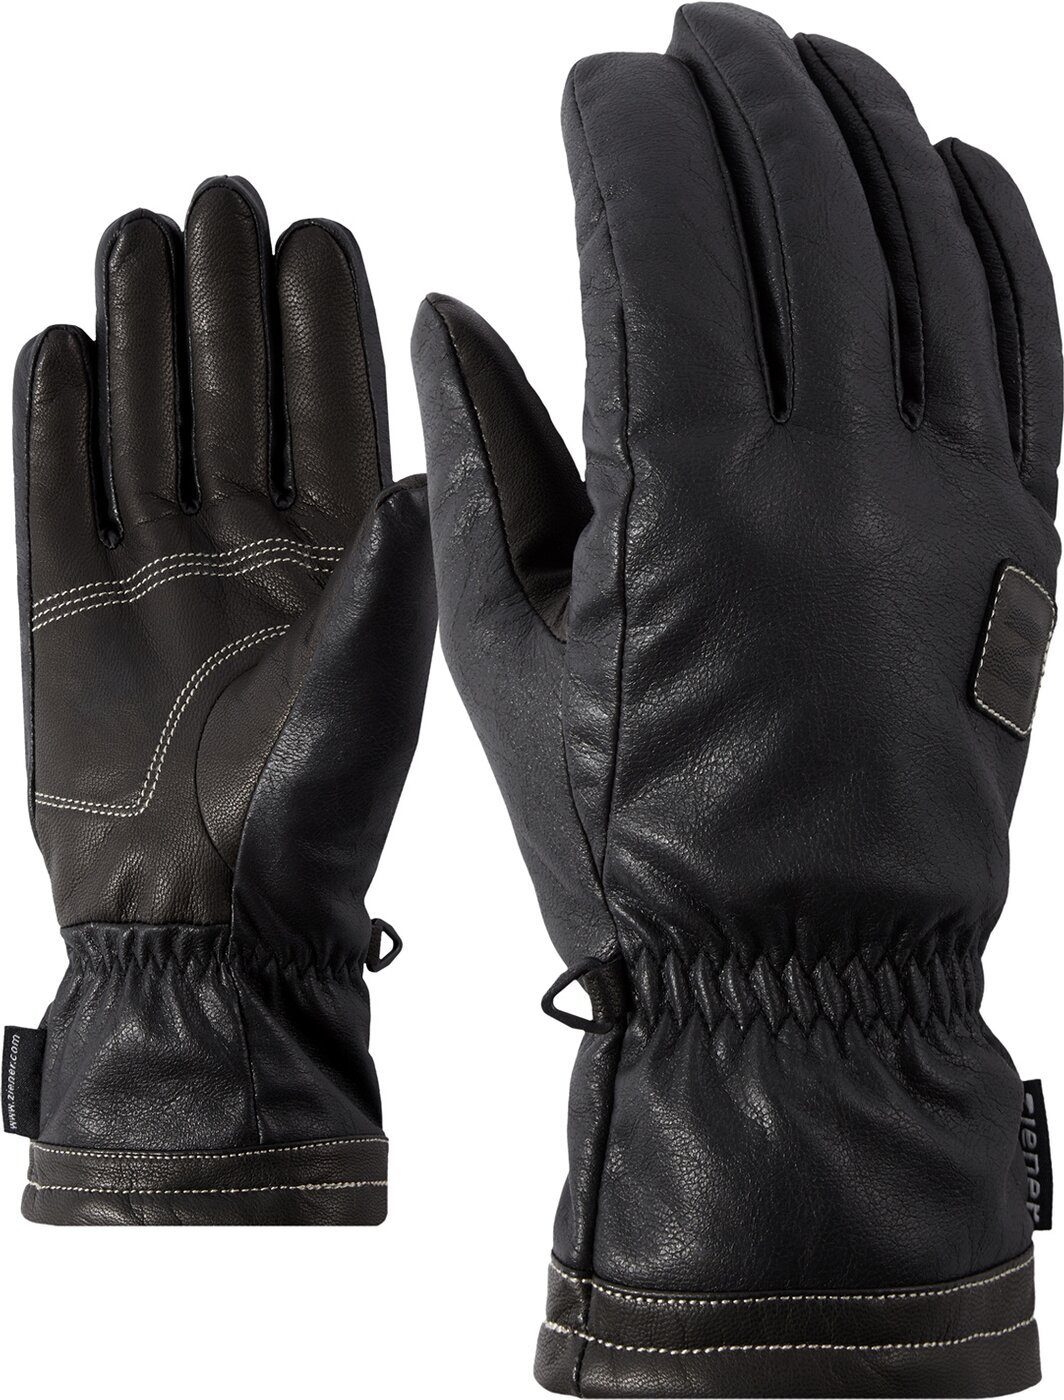 Ziener Fleecehandschuhe multisport ISOR glove